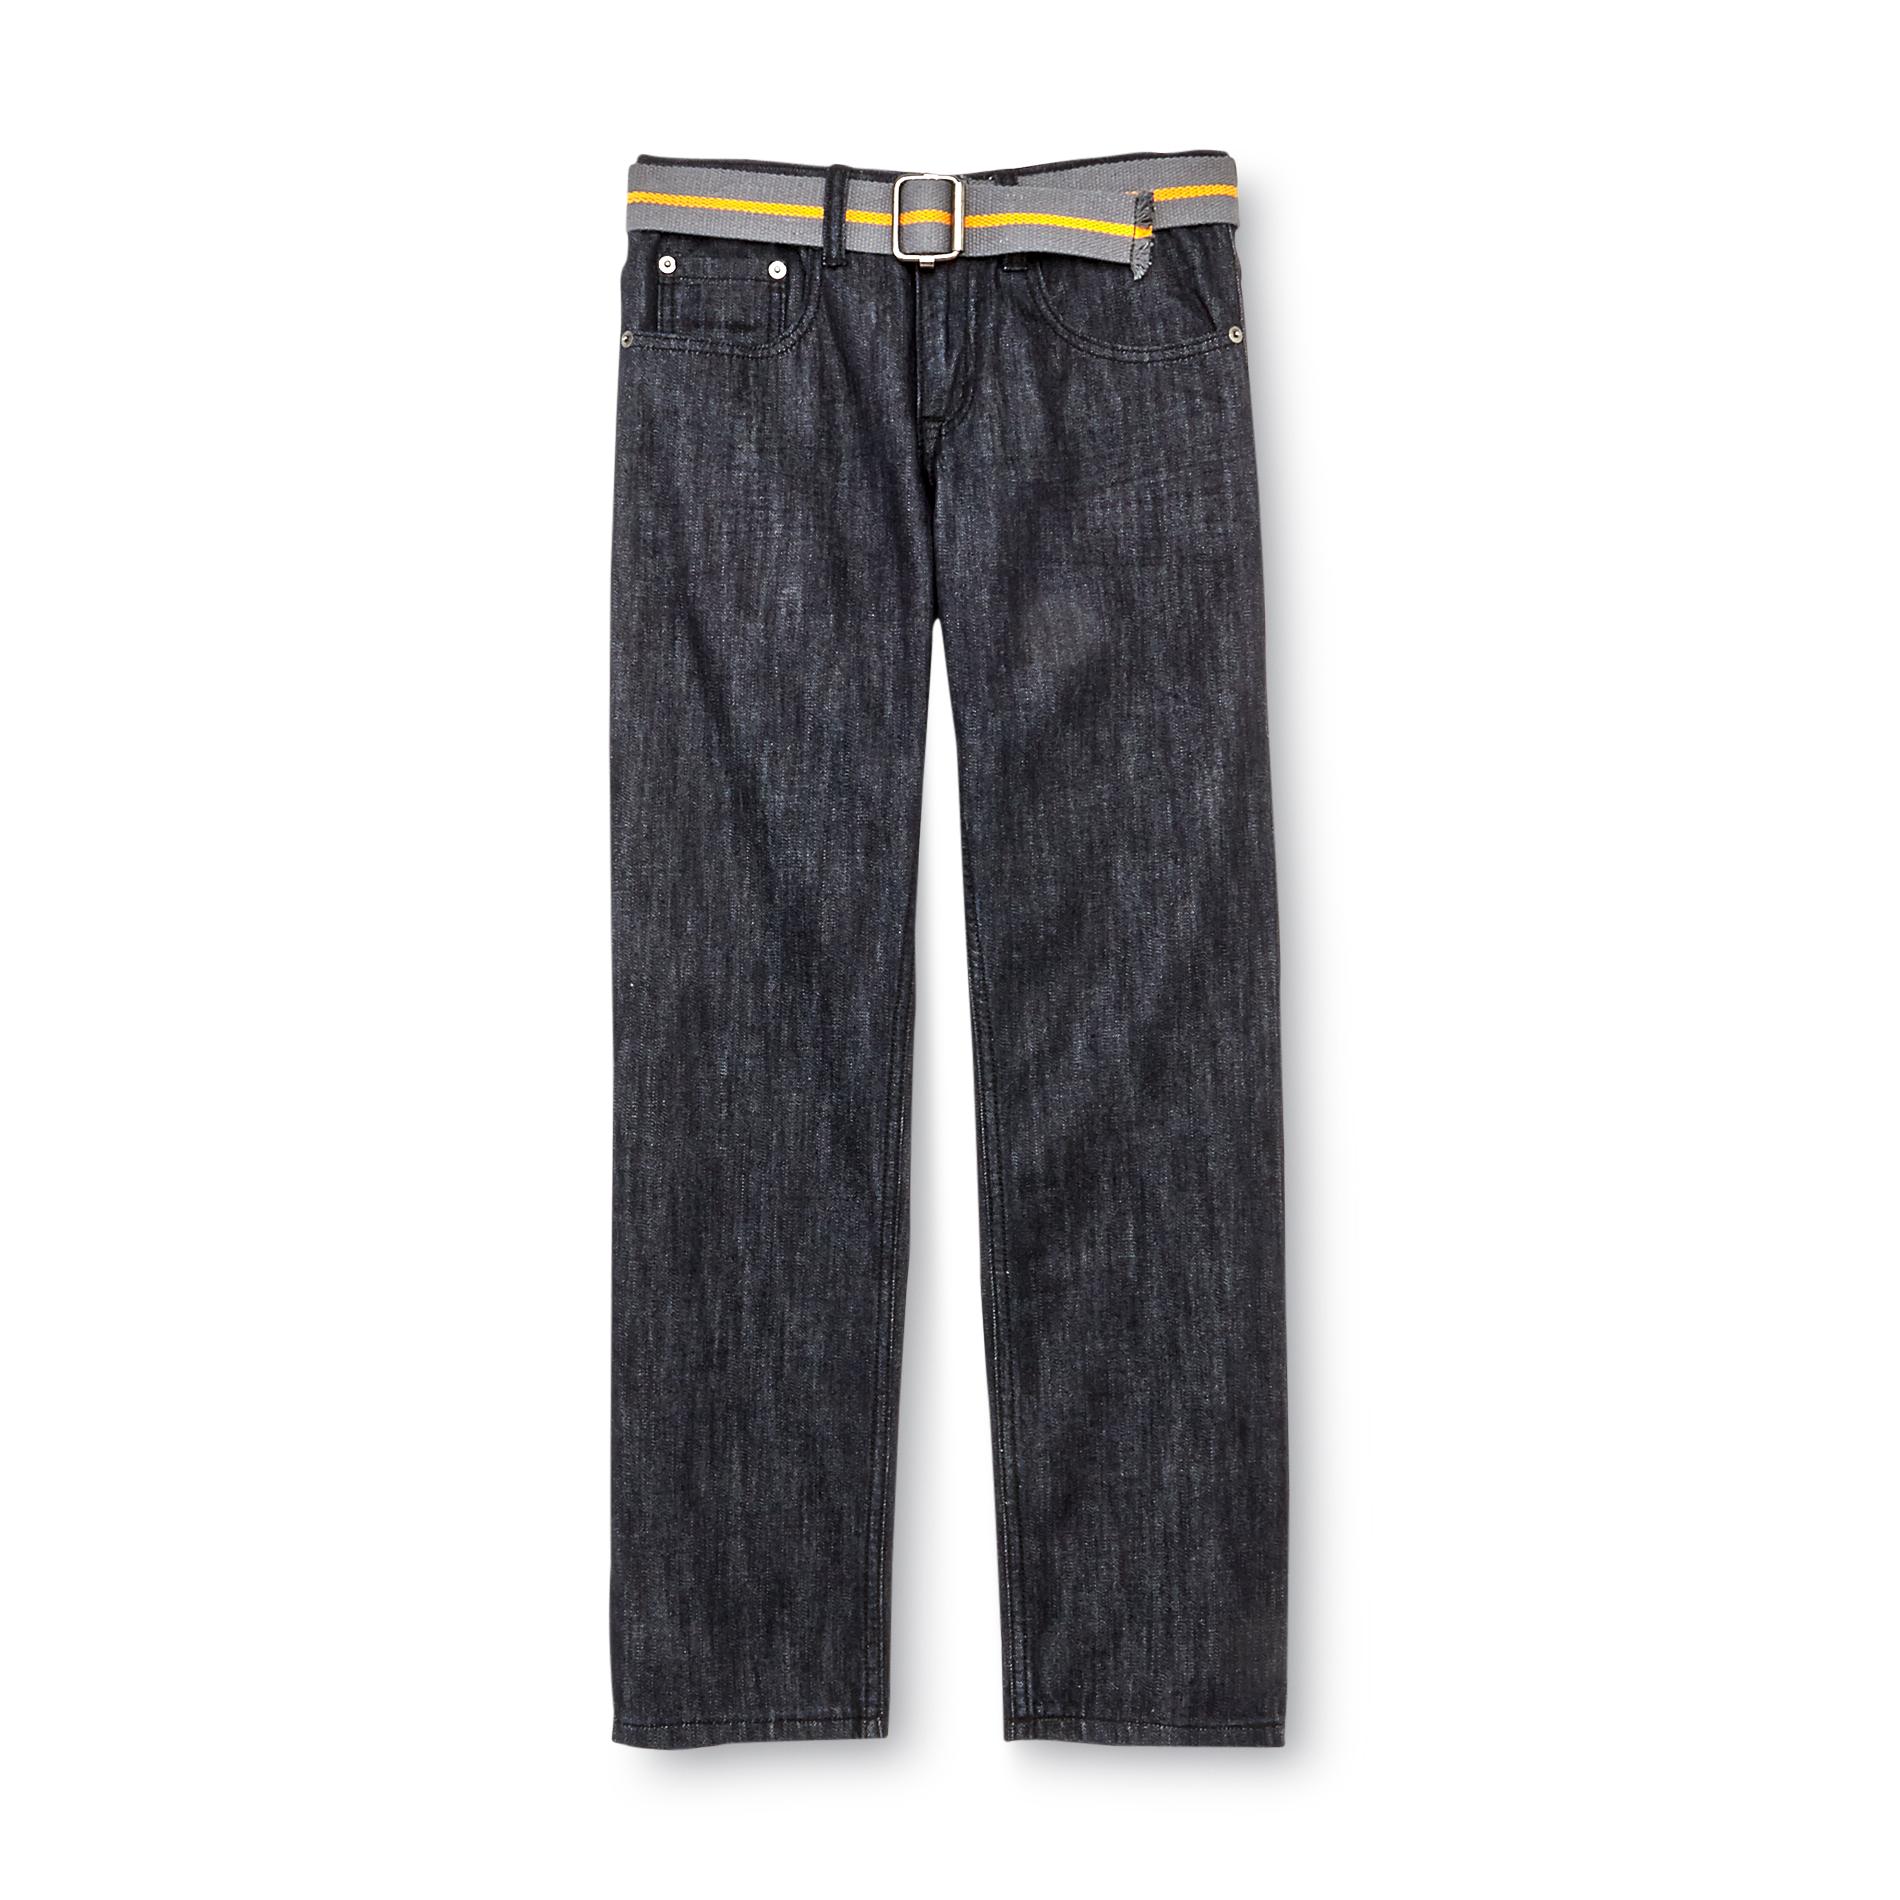 SK2 Boy's Straight Leg Jeans & Belt - Dark Wash